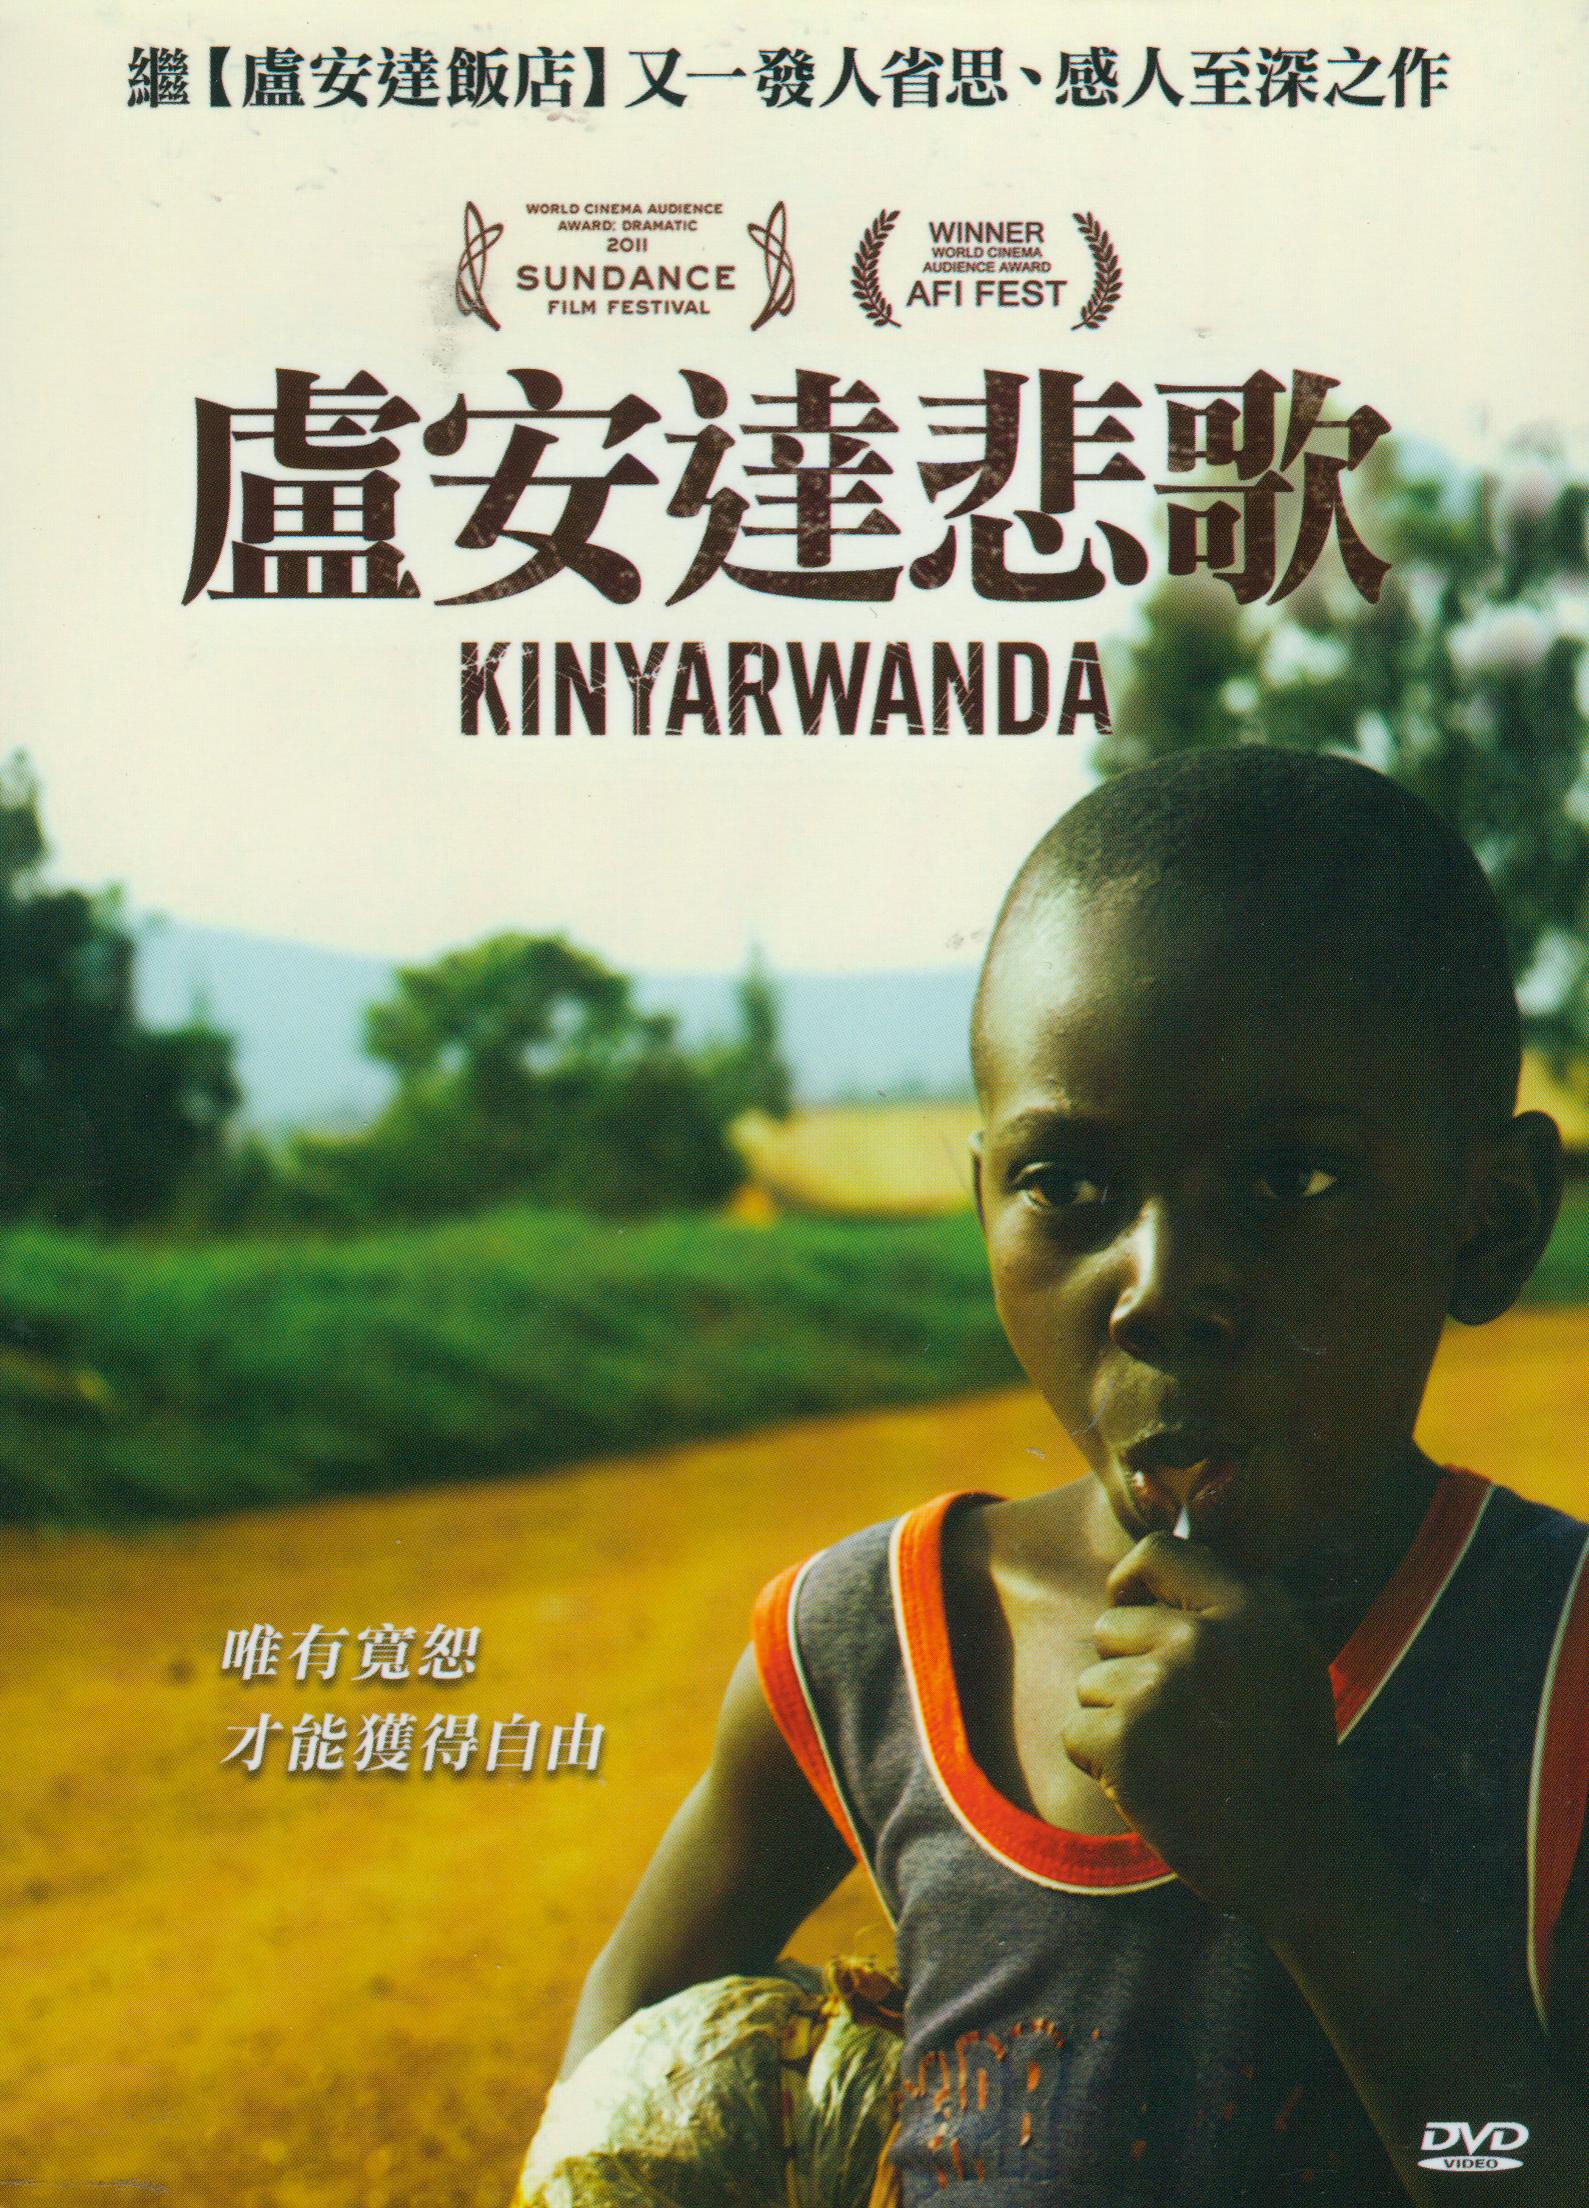 盧安達悲歌[輔導級:劇情] : Kinyarwanda